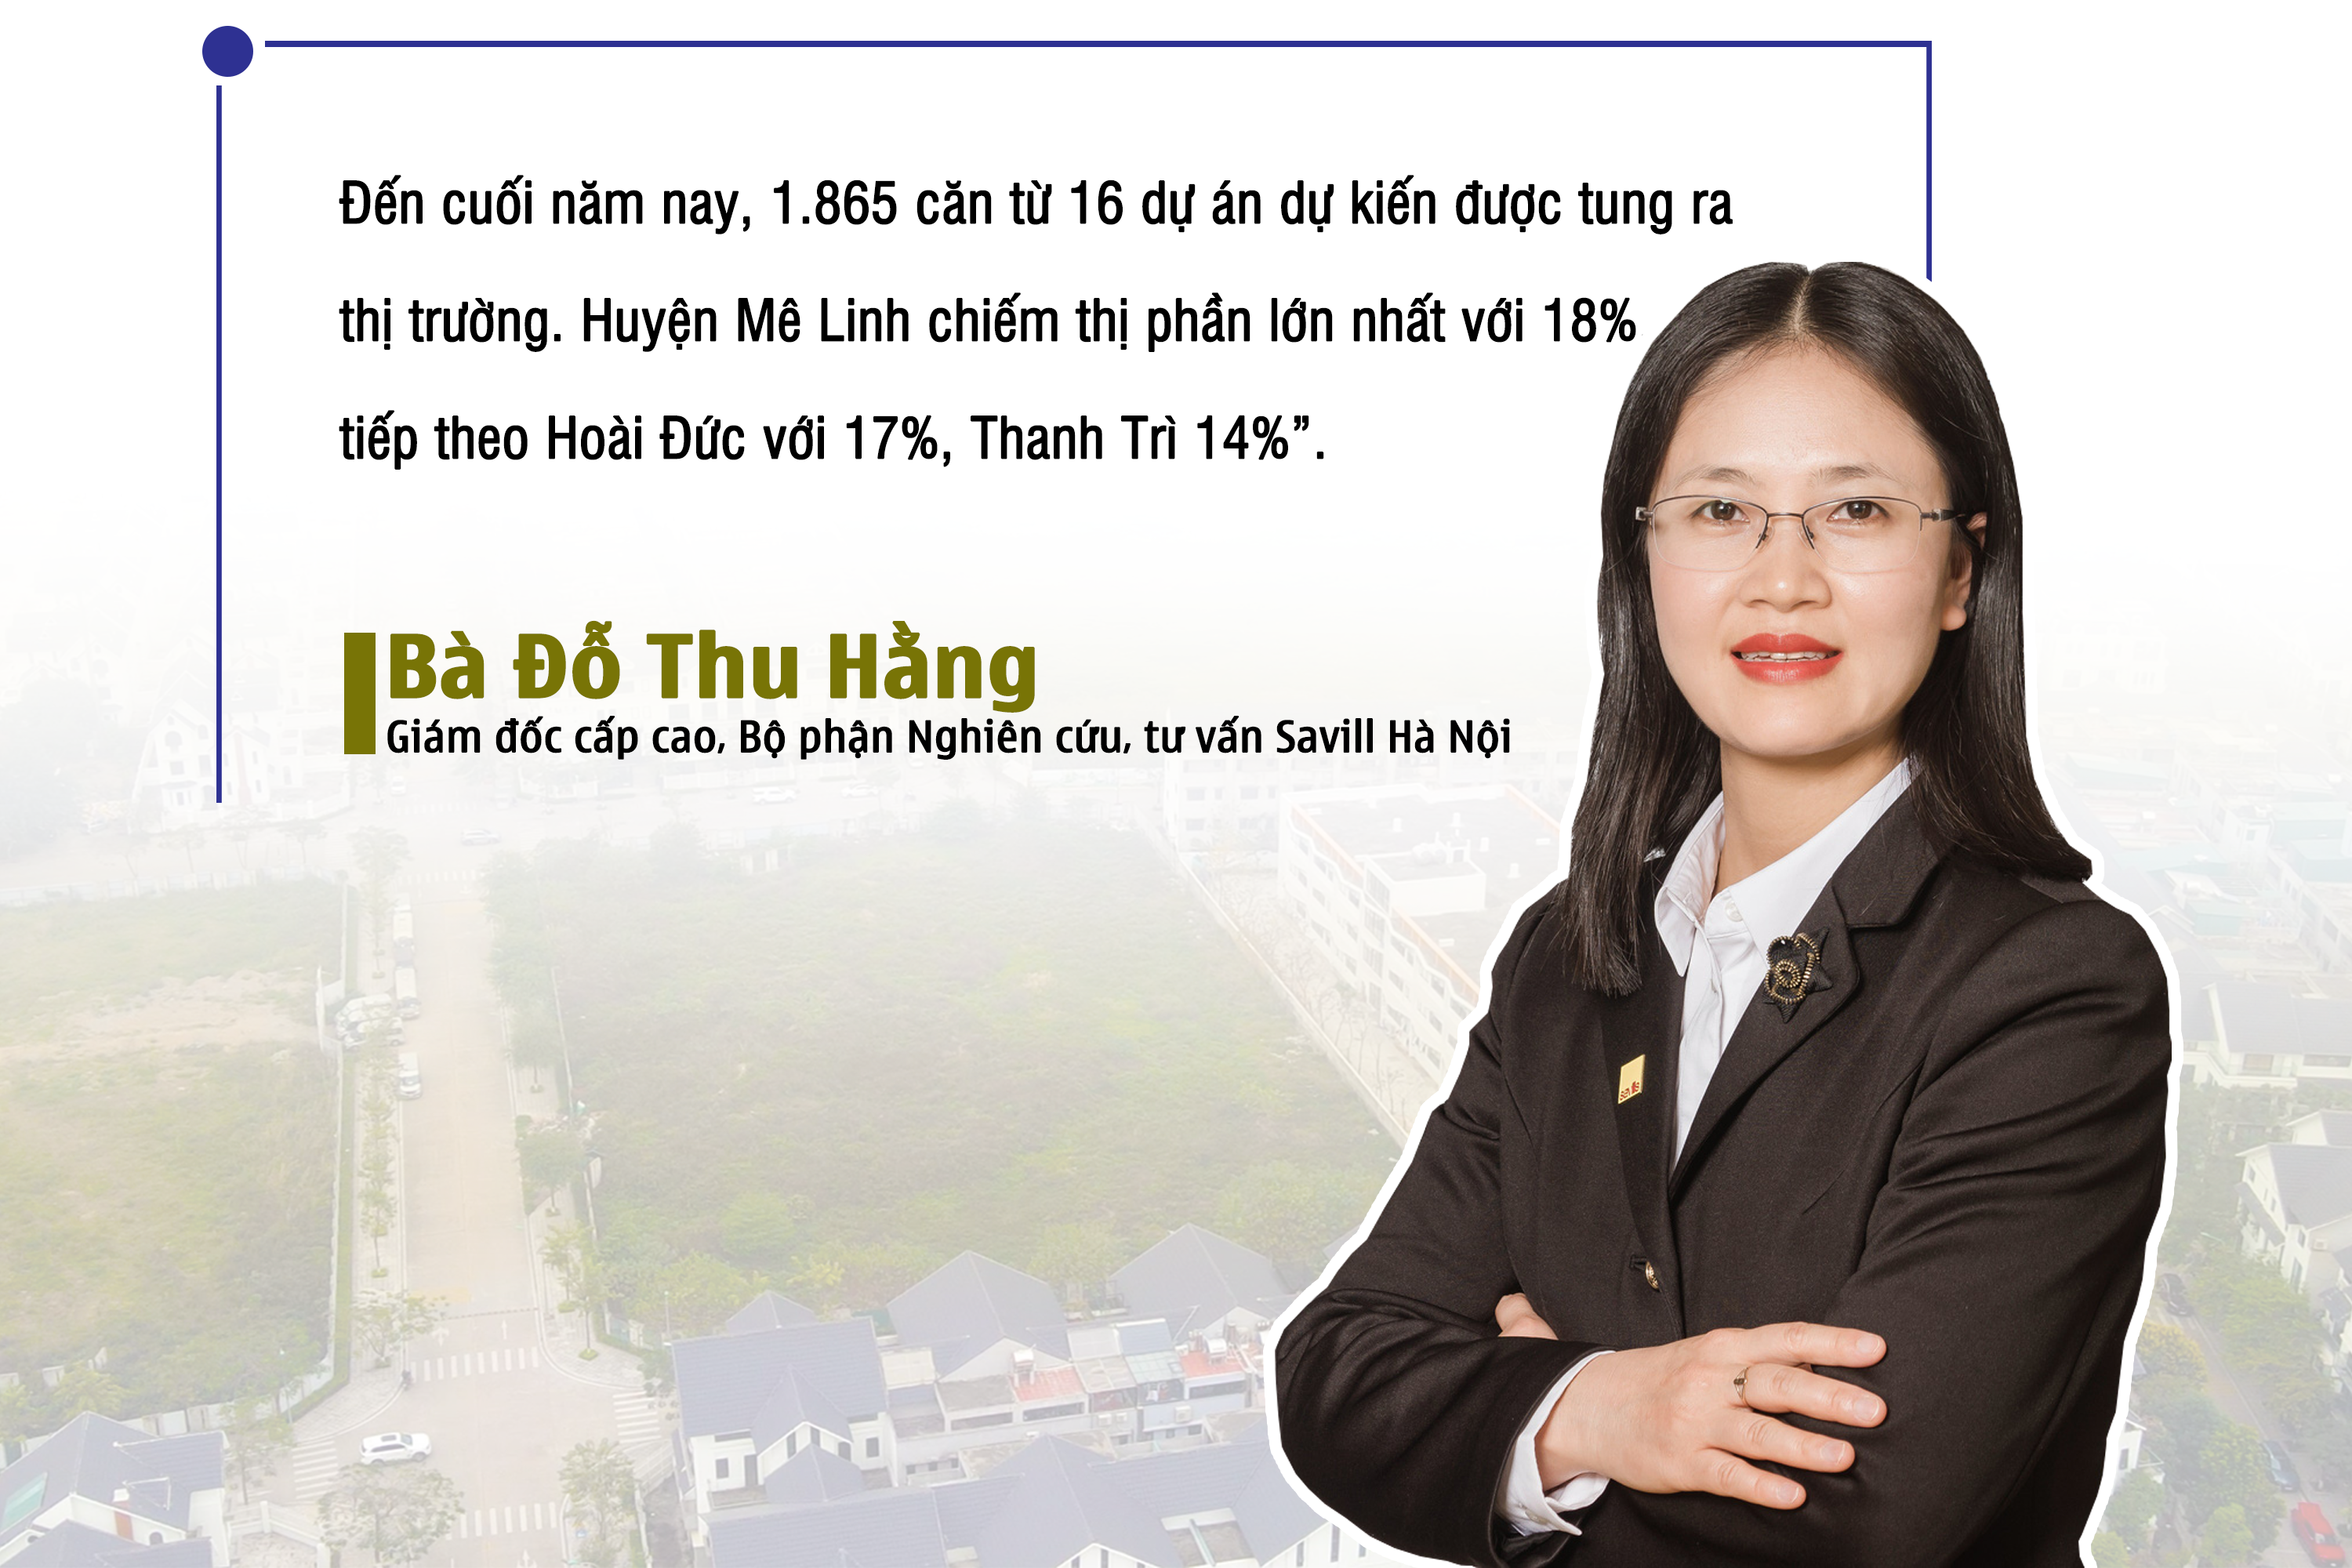 Thị trường biệt thự, liền kề tại Hà Nội: Giá giảm, người mua đồng loạt “tháo chạy”? - Ảnh 4